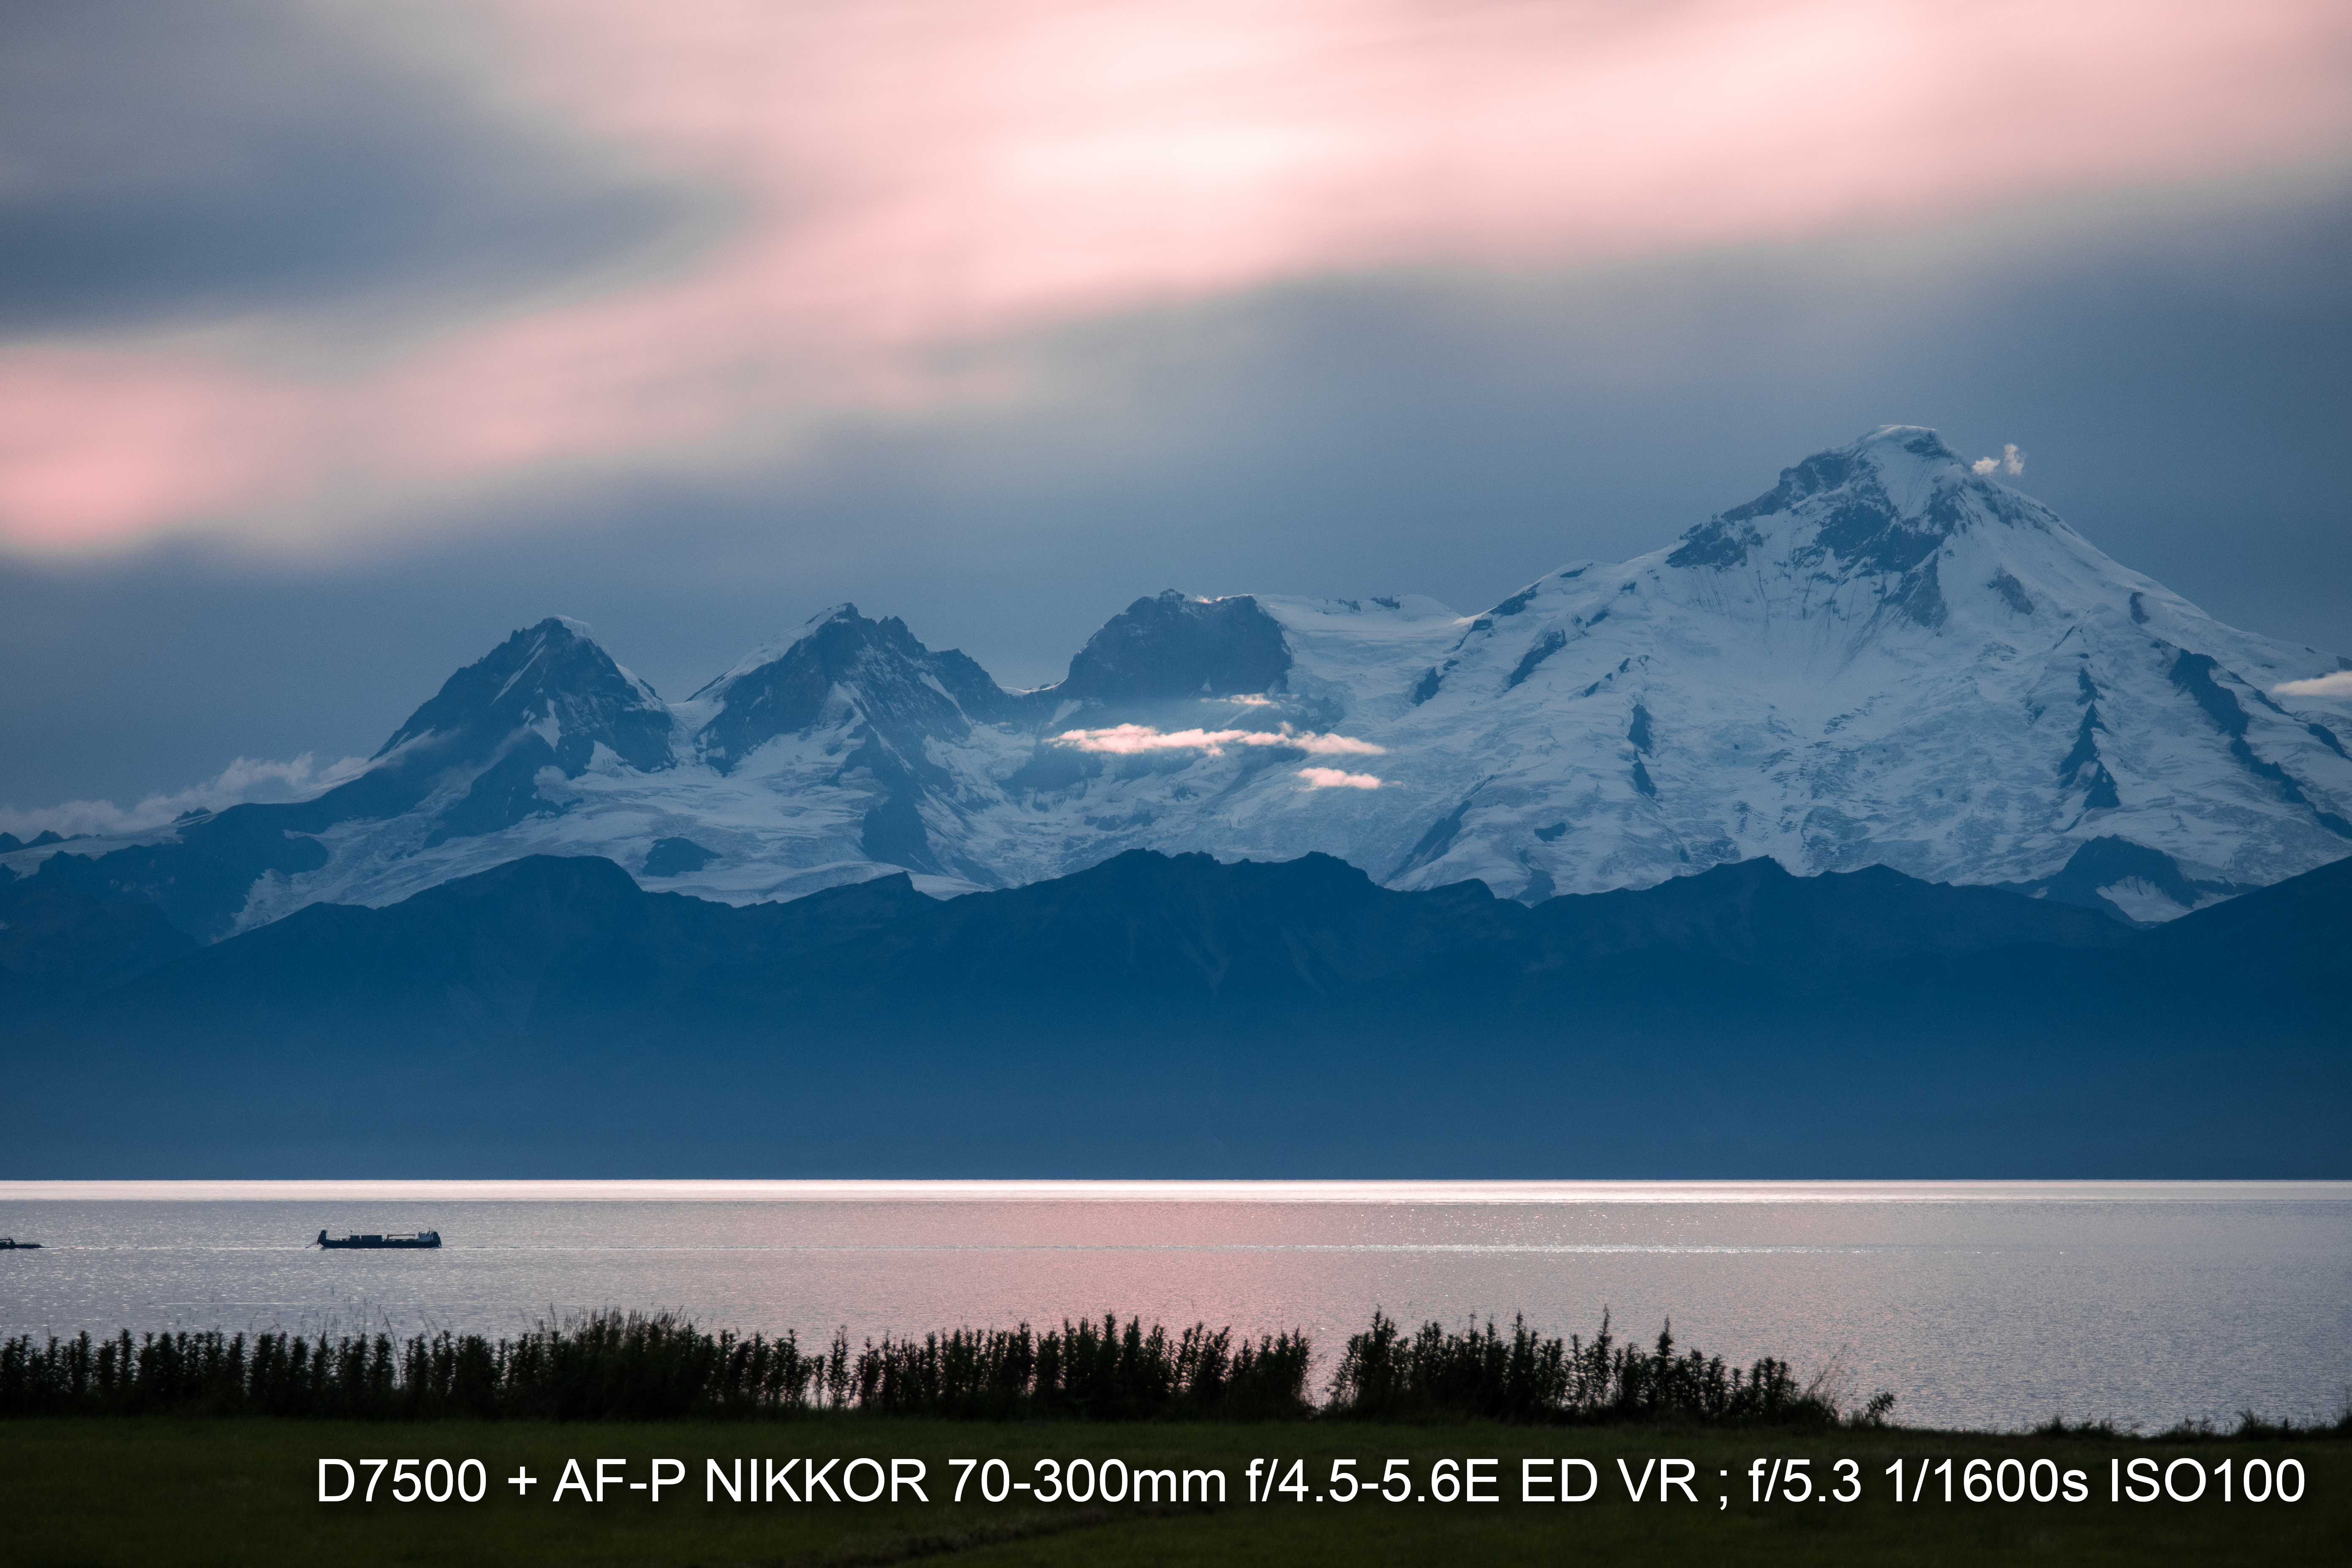 AF-P 70-300MM F/4.5-5.6E ED VR 超值旅行望遠鏡頭勇闖北極圈;Nikon AF 